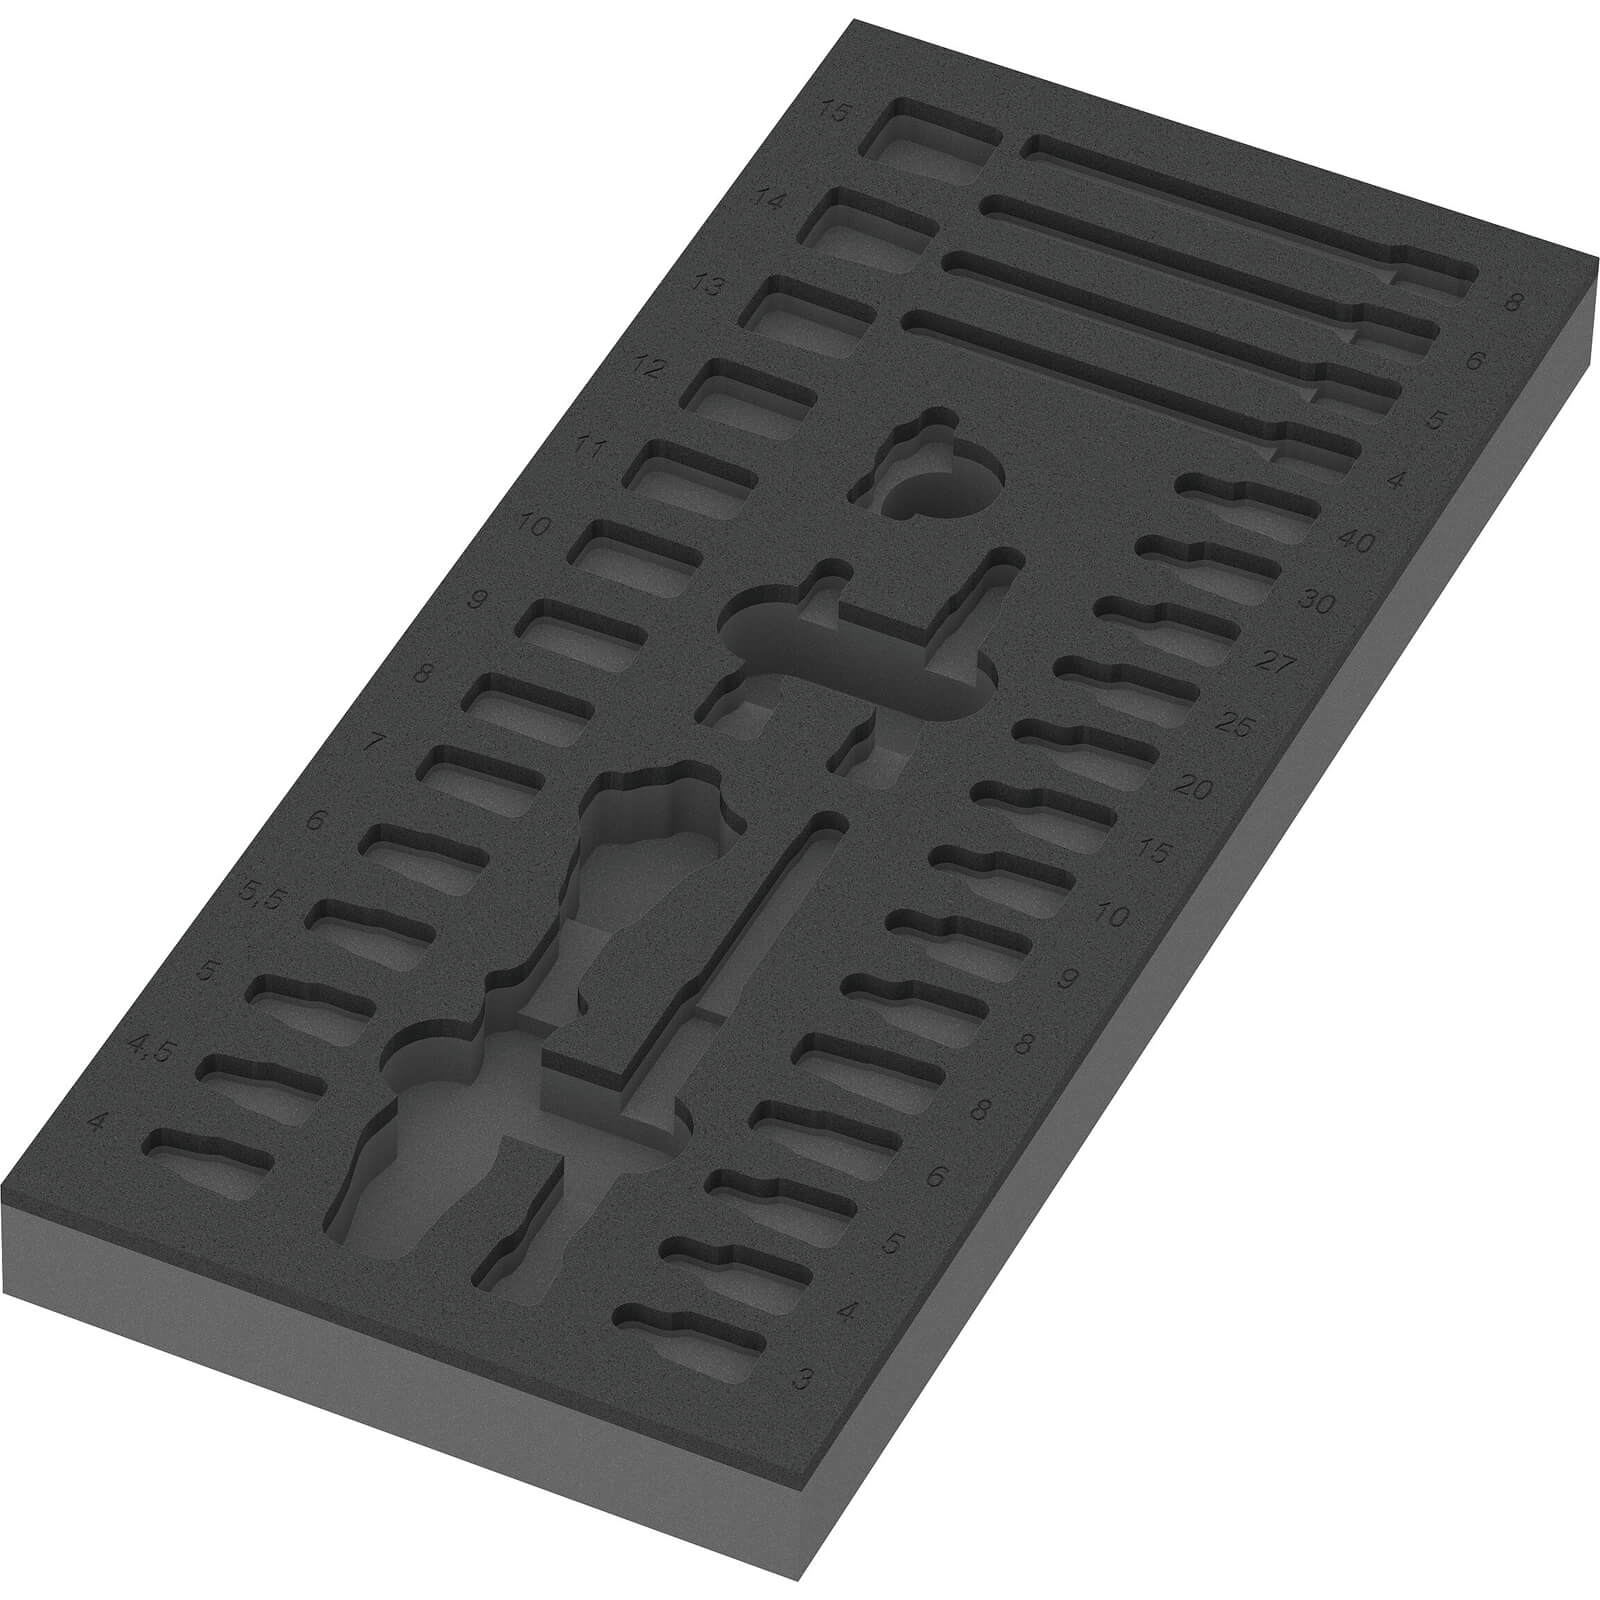 Image of Wera Empty Foam Insert Tray for 9720 1/4" Drive Socket Set